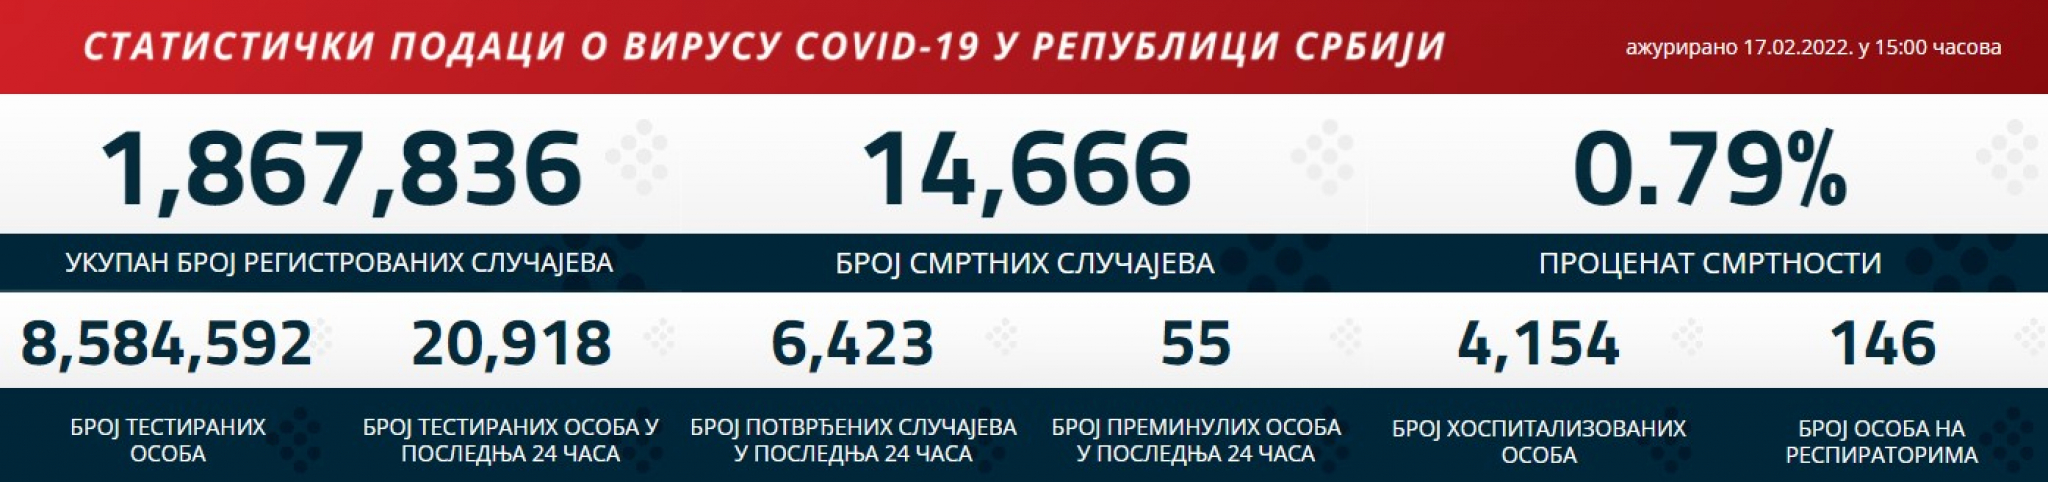 KORONA PRESEK ZA 18. FEBRUAR Ovo su najnoviji podaci o broju zaraženih koronavirusom u Srbiji